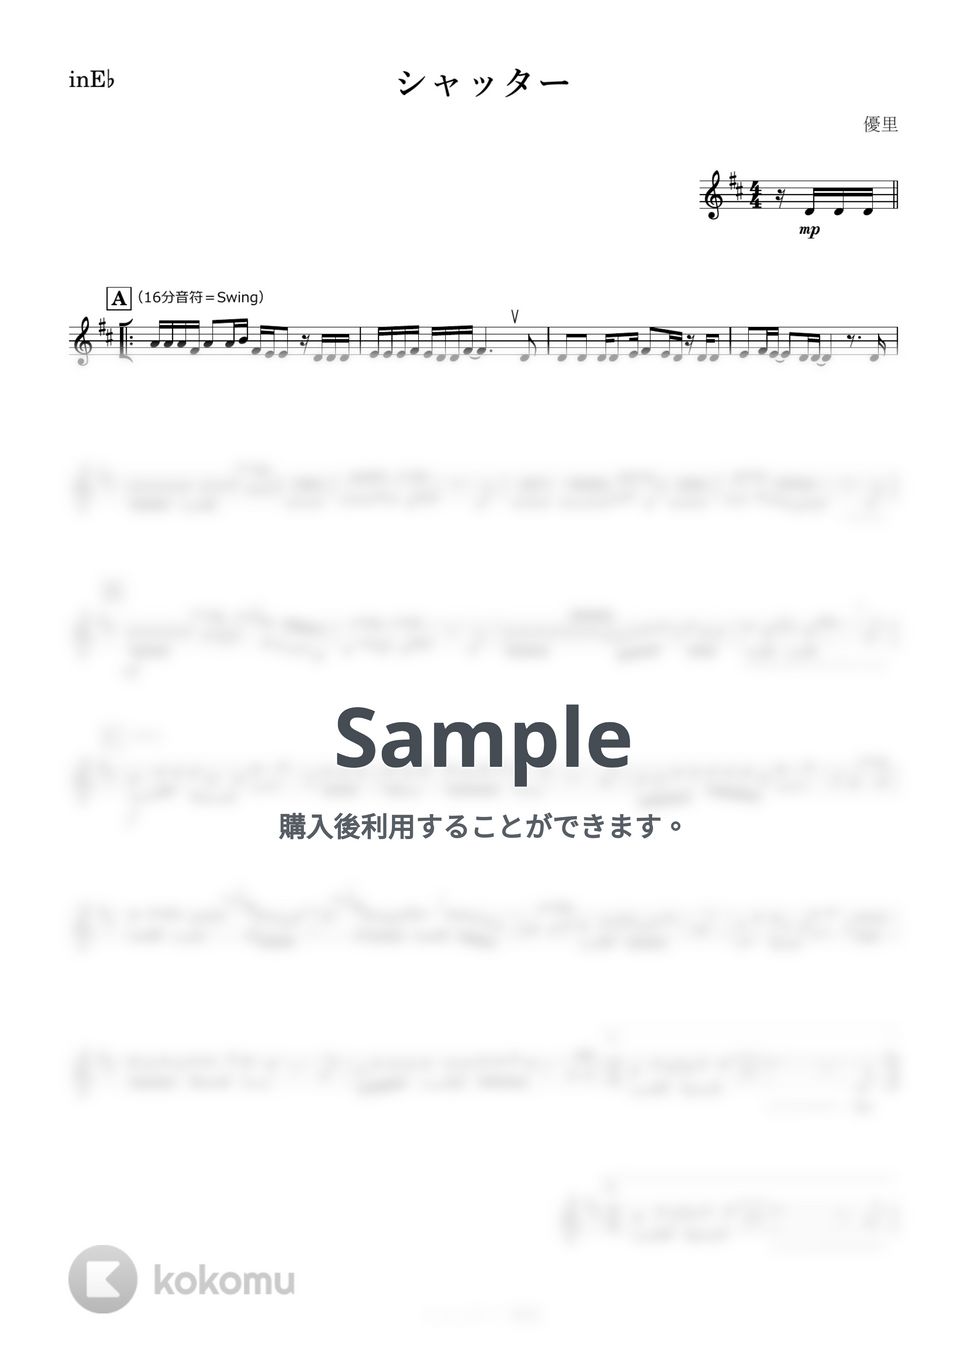 優里 - シャッター (E♭) by kanamusic